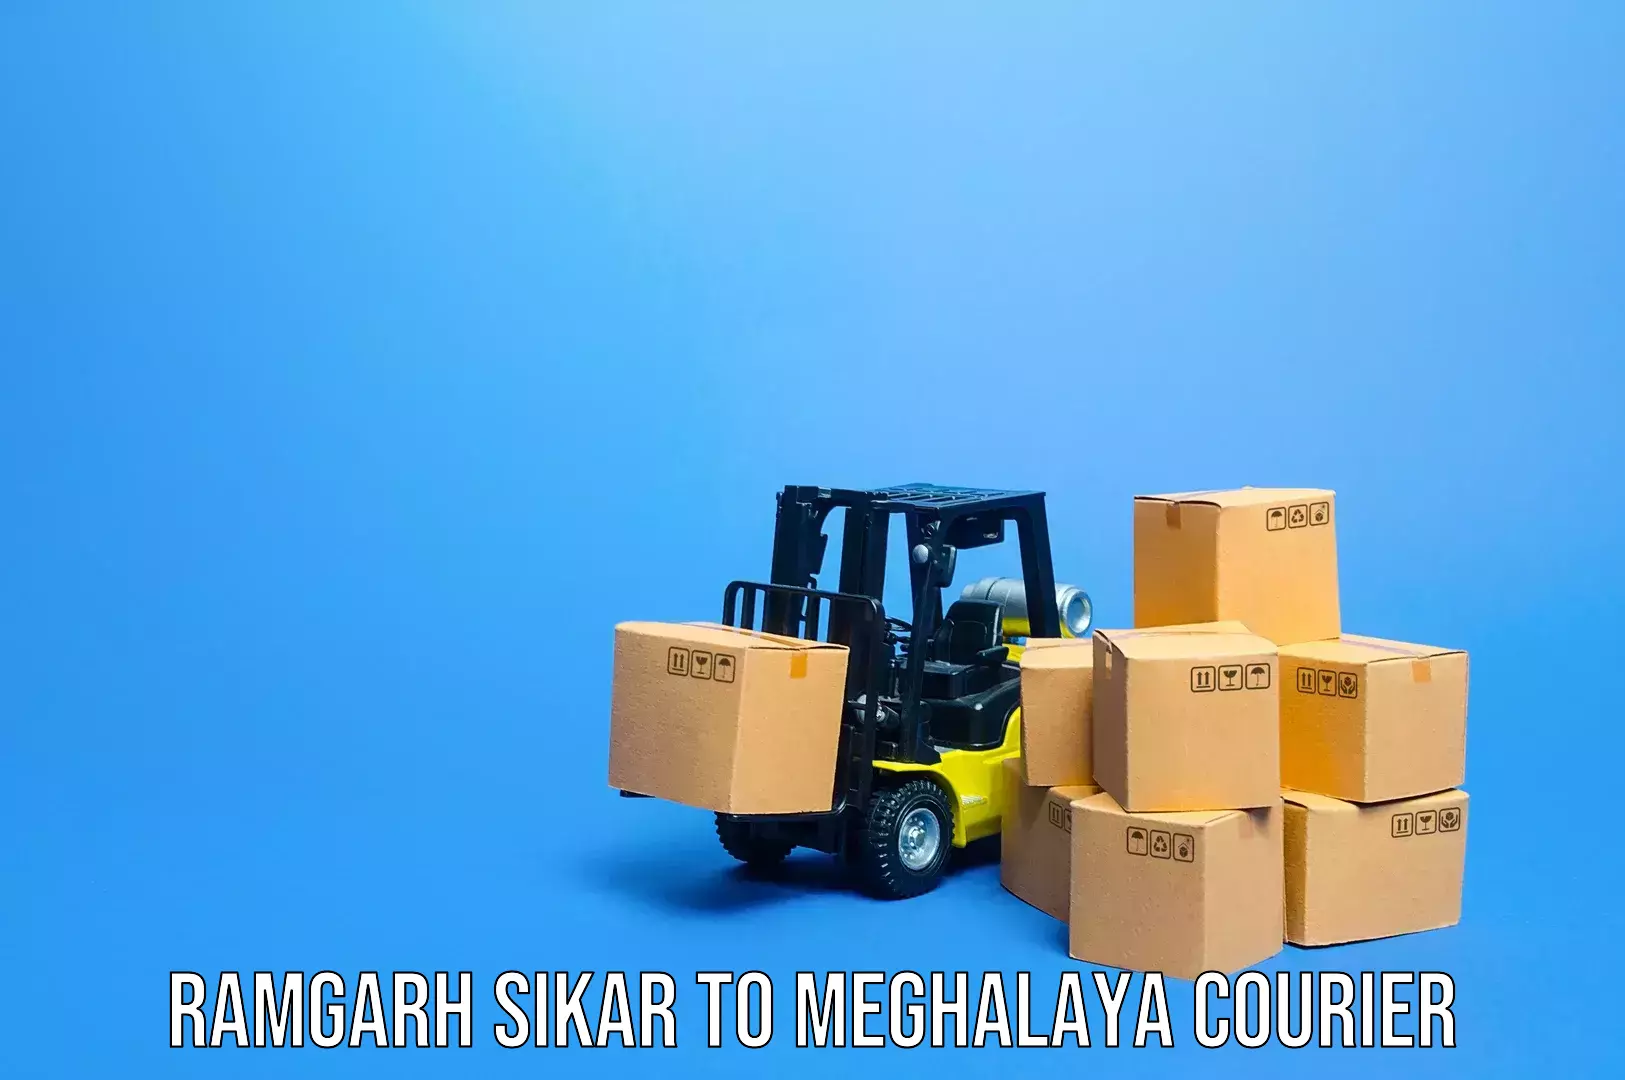 Baggage shipping quotes Ramgarh Sikar to Shillong